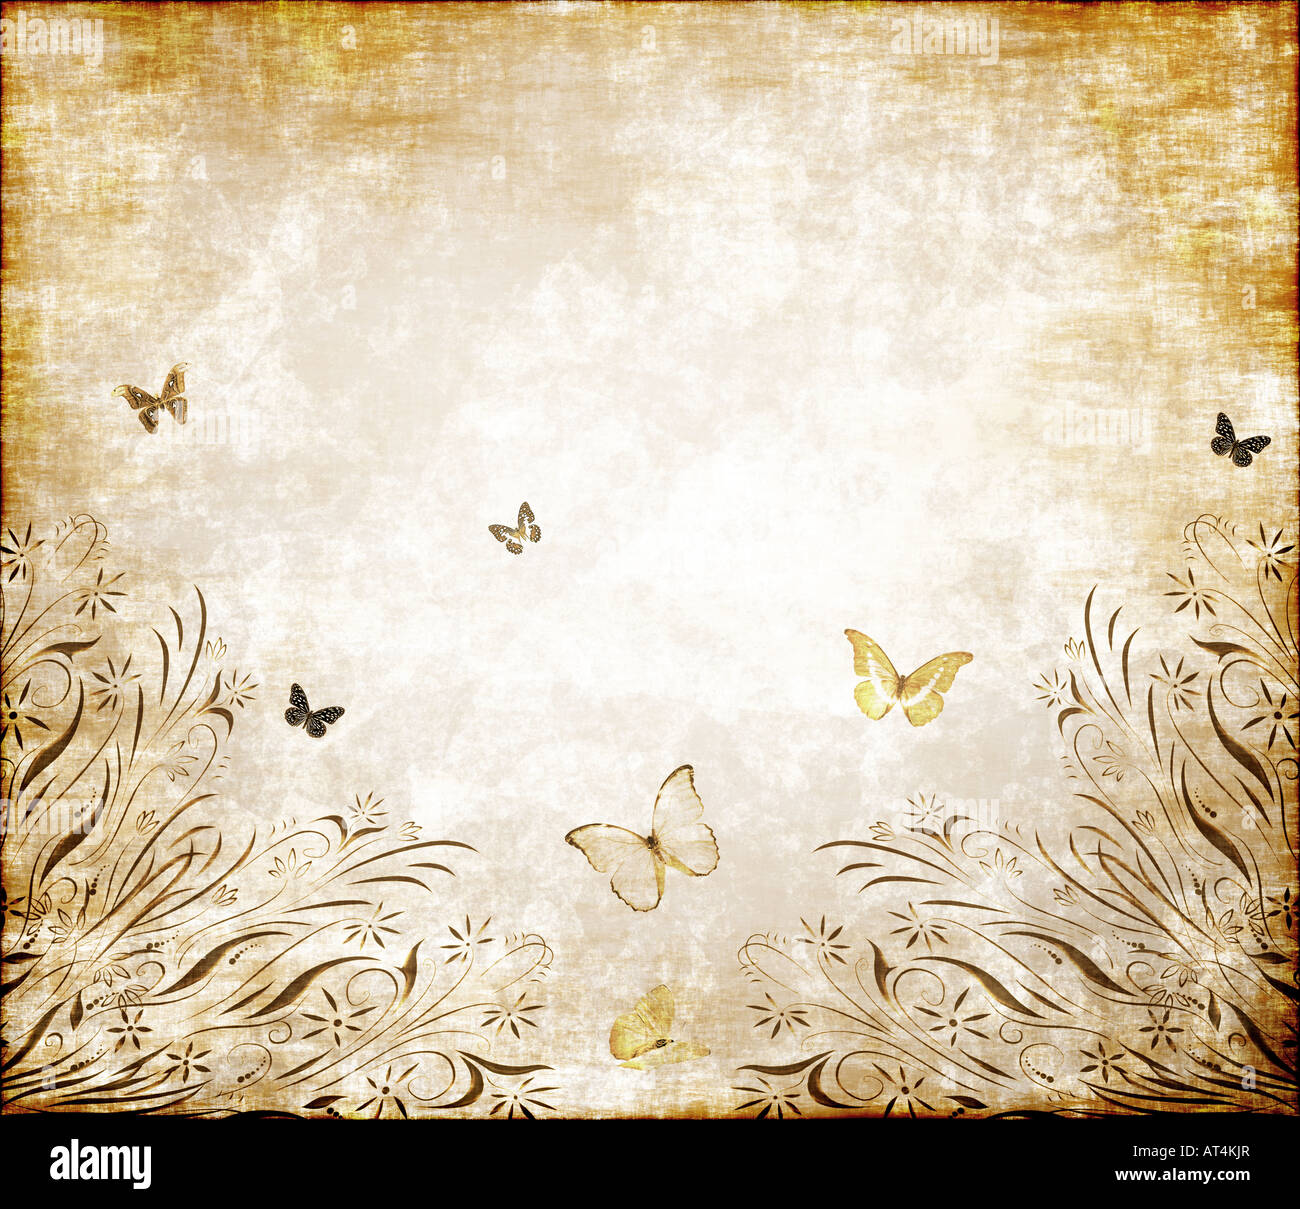 Belle illustration grunge floral avec papillons sur du vieux parchemin Banque D'Images